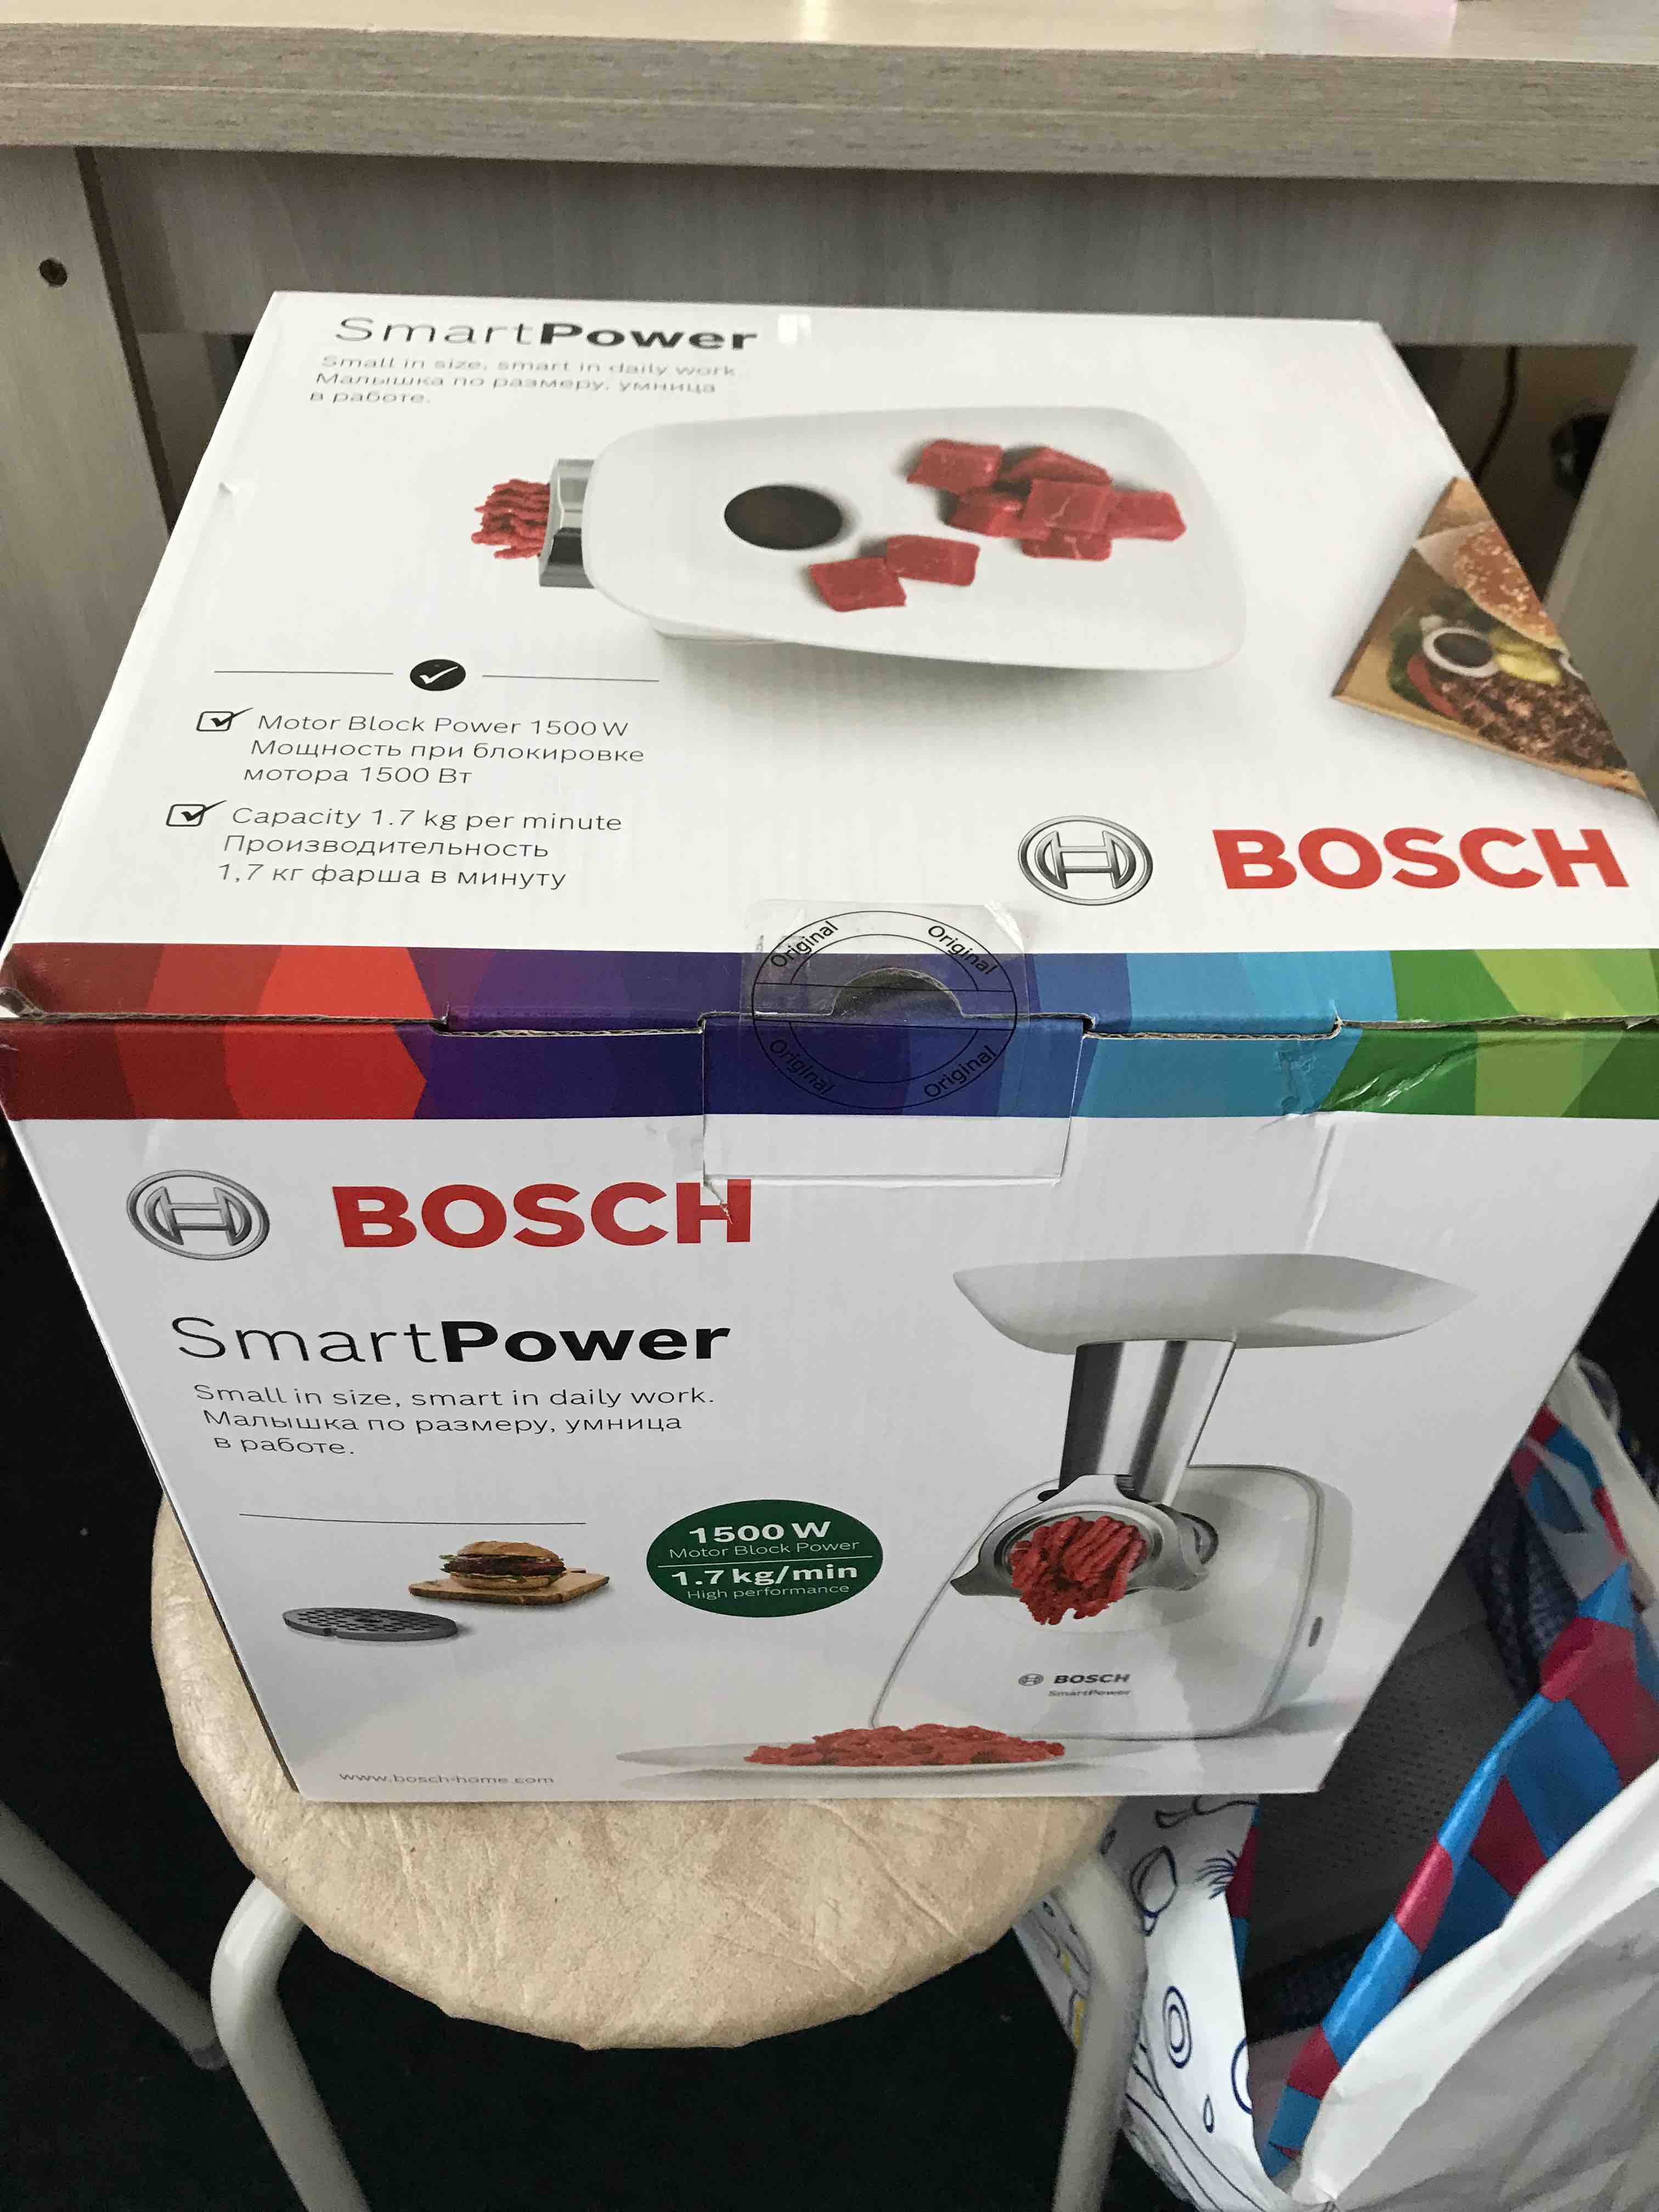 Электромясорубка цены Bosch купить в White, интернет-магазинах MFW2500W Мегамаркет на в SmartPower Москве,